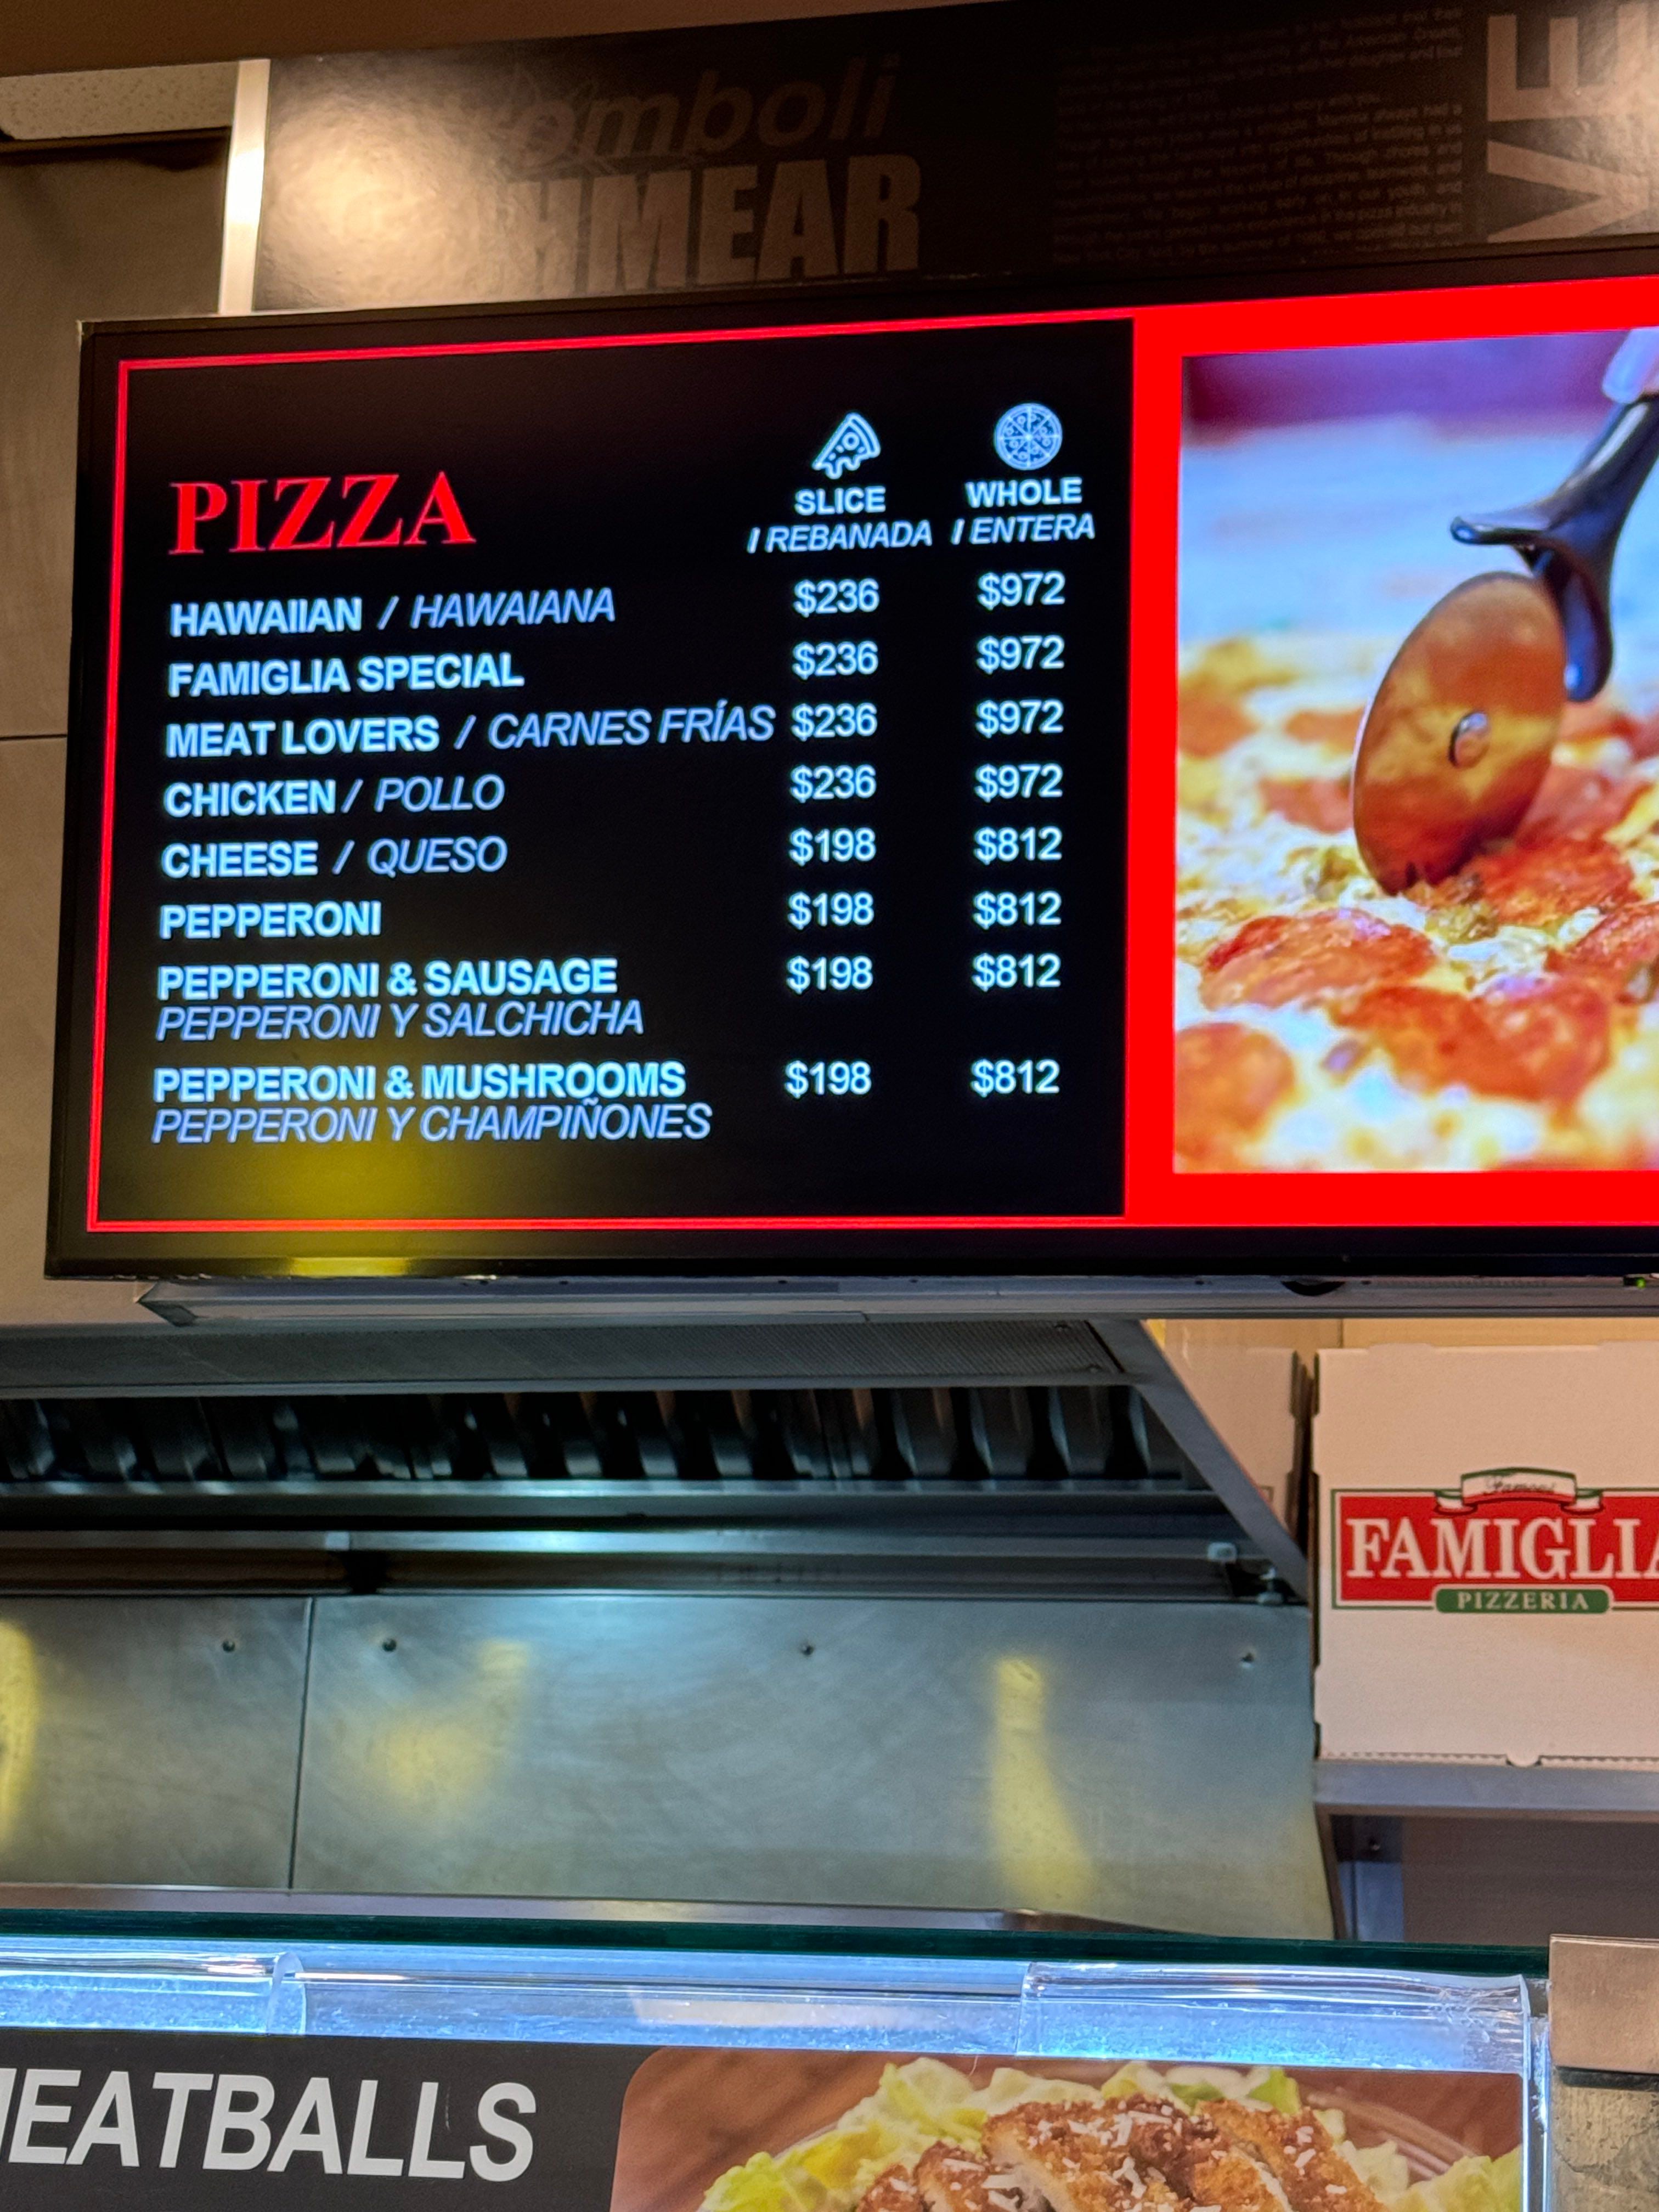 Costos del menú de pizzería Famous Famiglia del Aeropuerto Internacional de Cancún